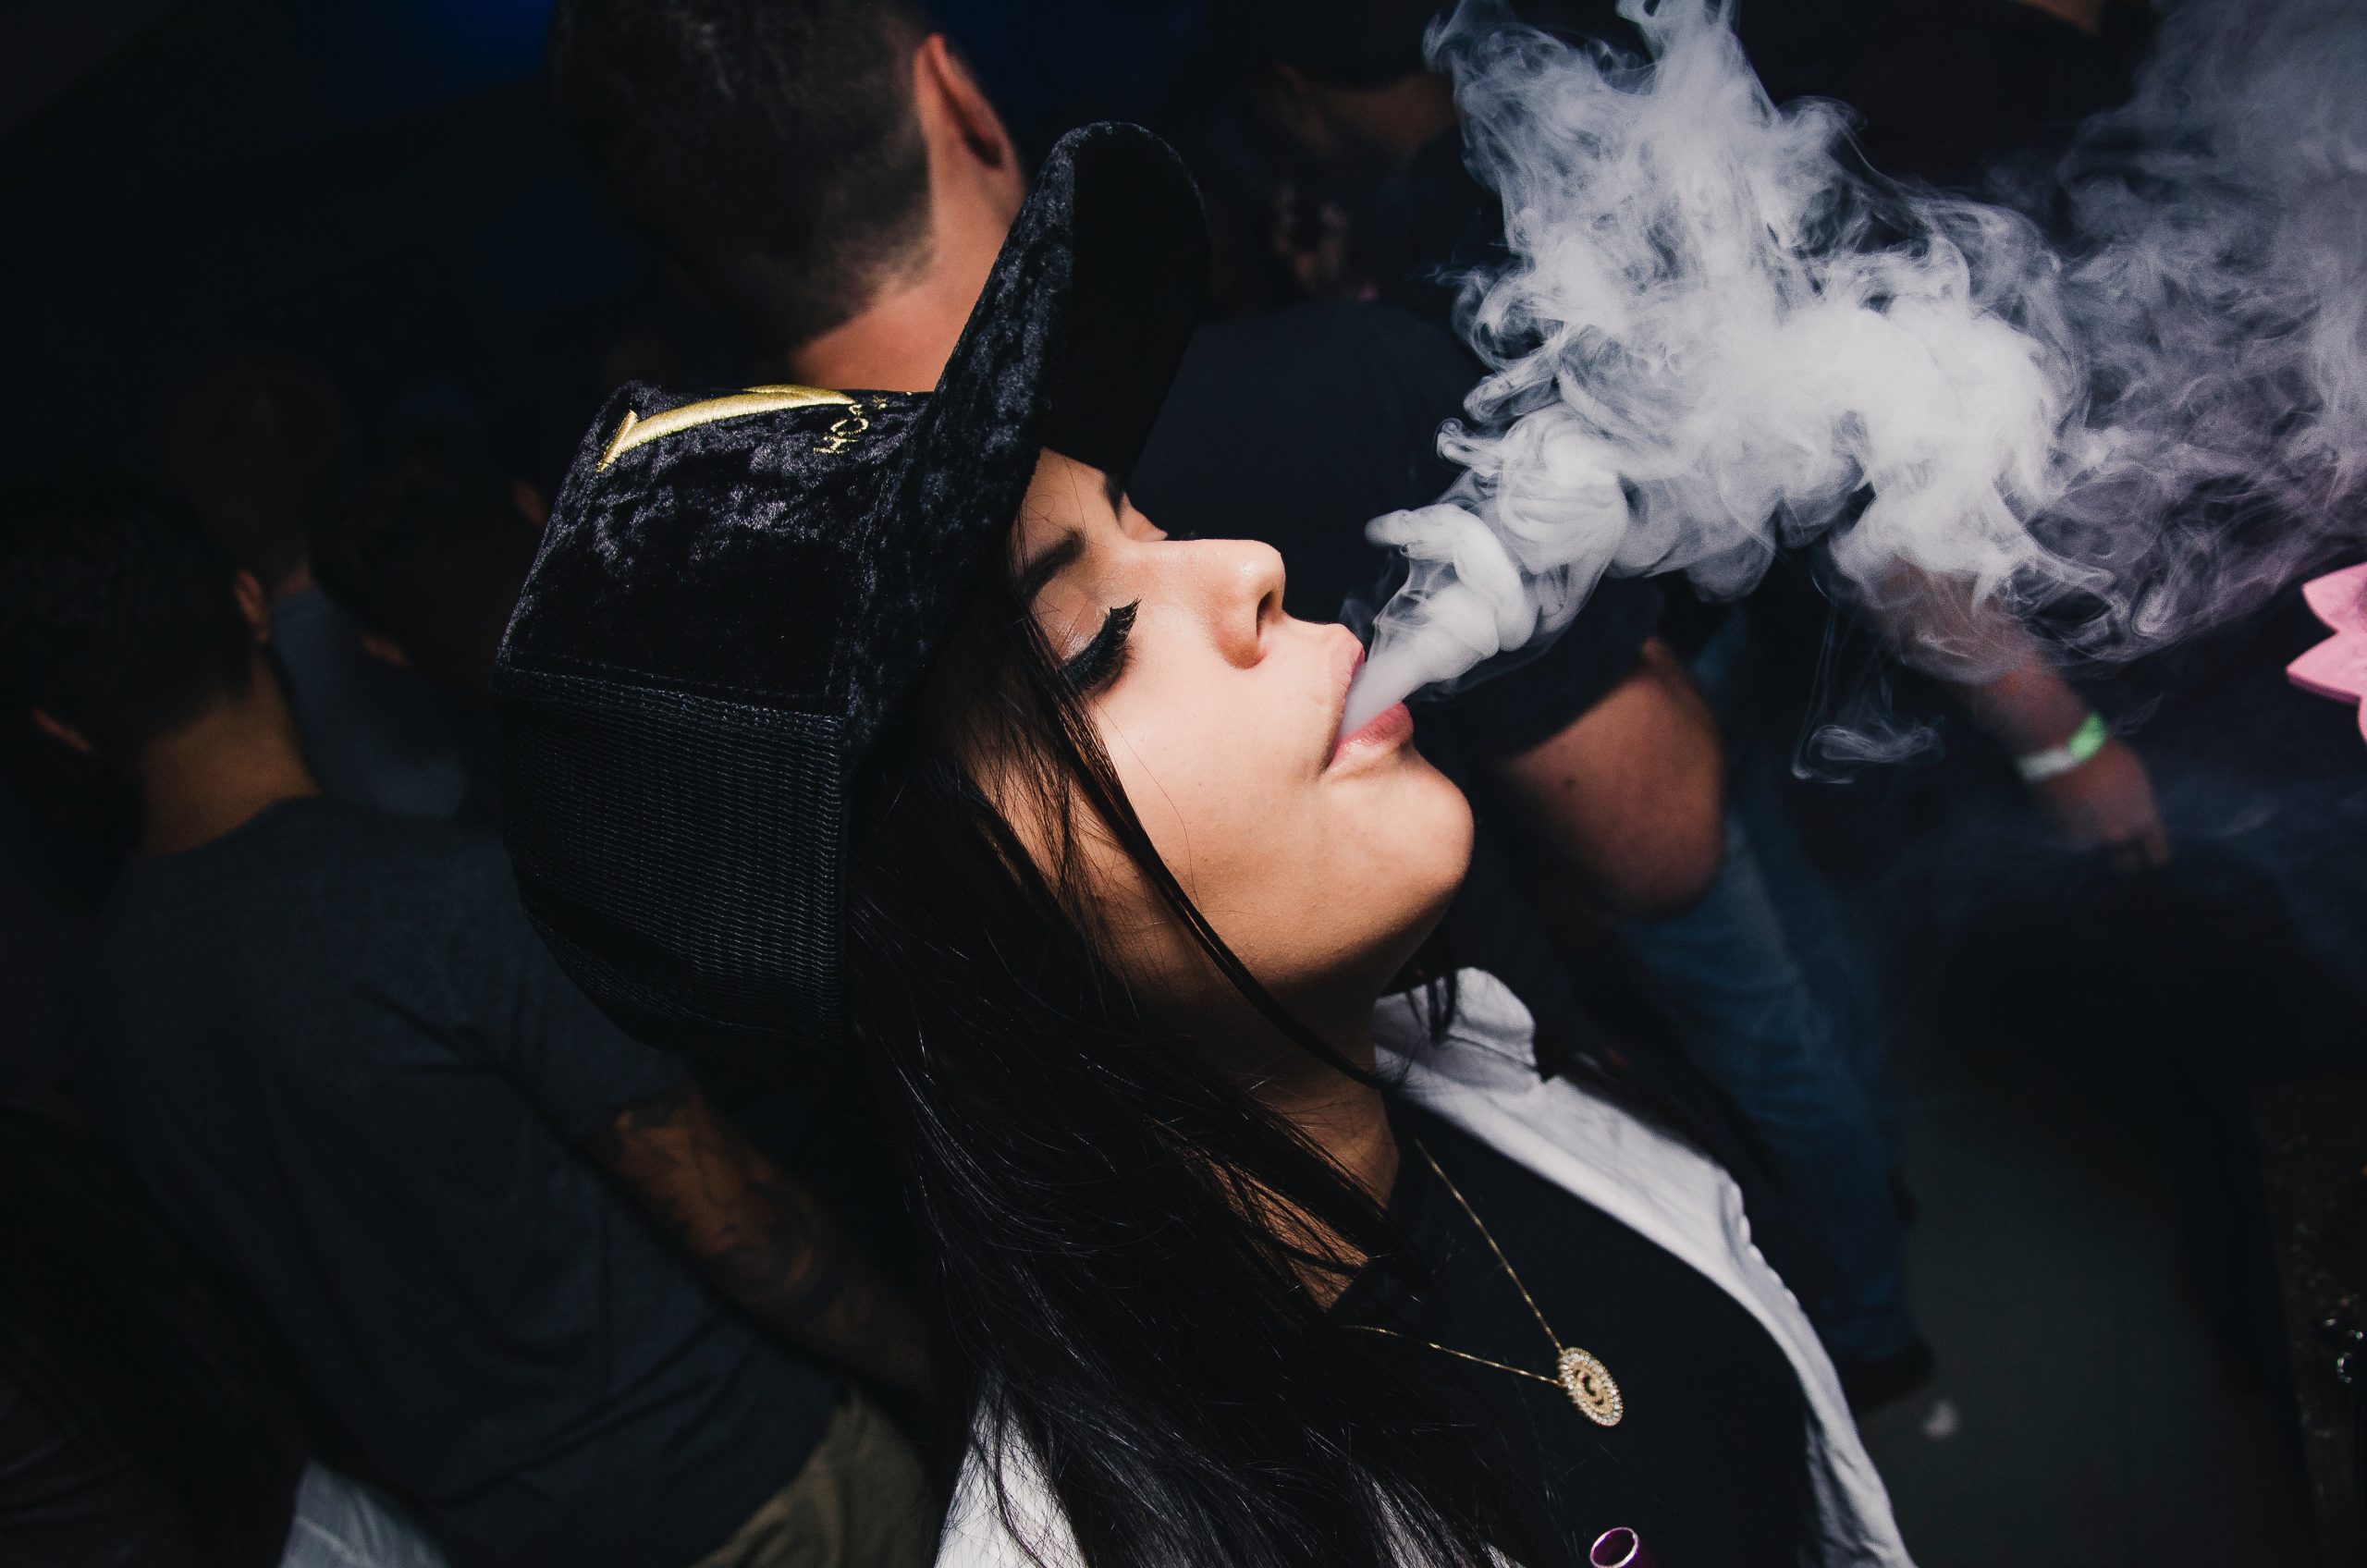 Beautiful girl smokes weed